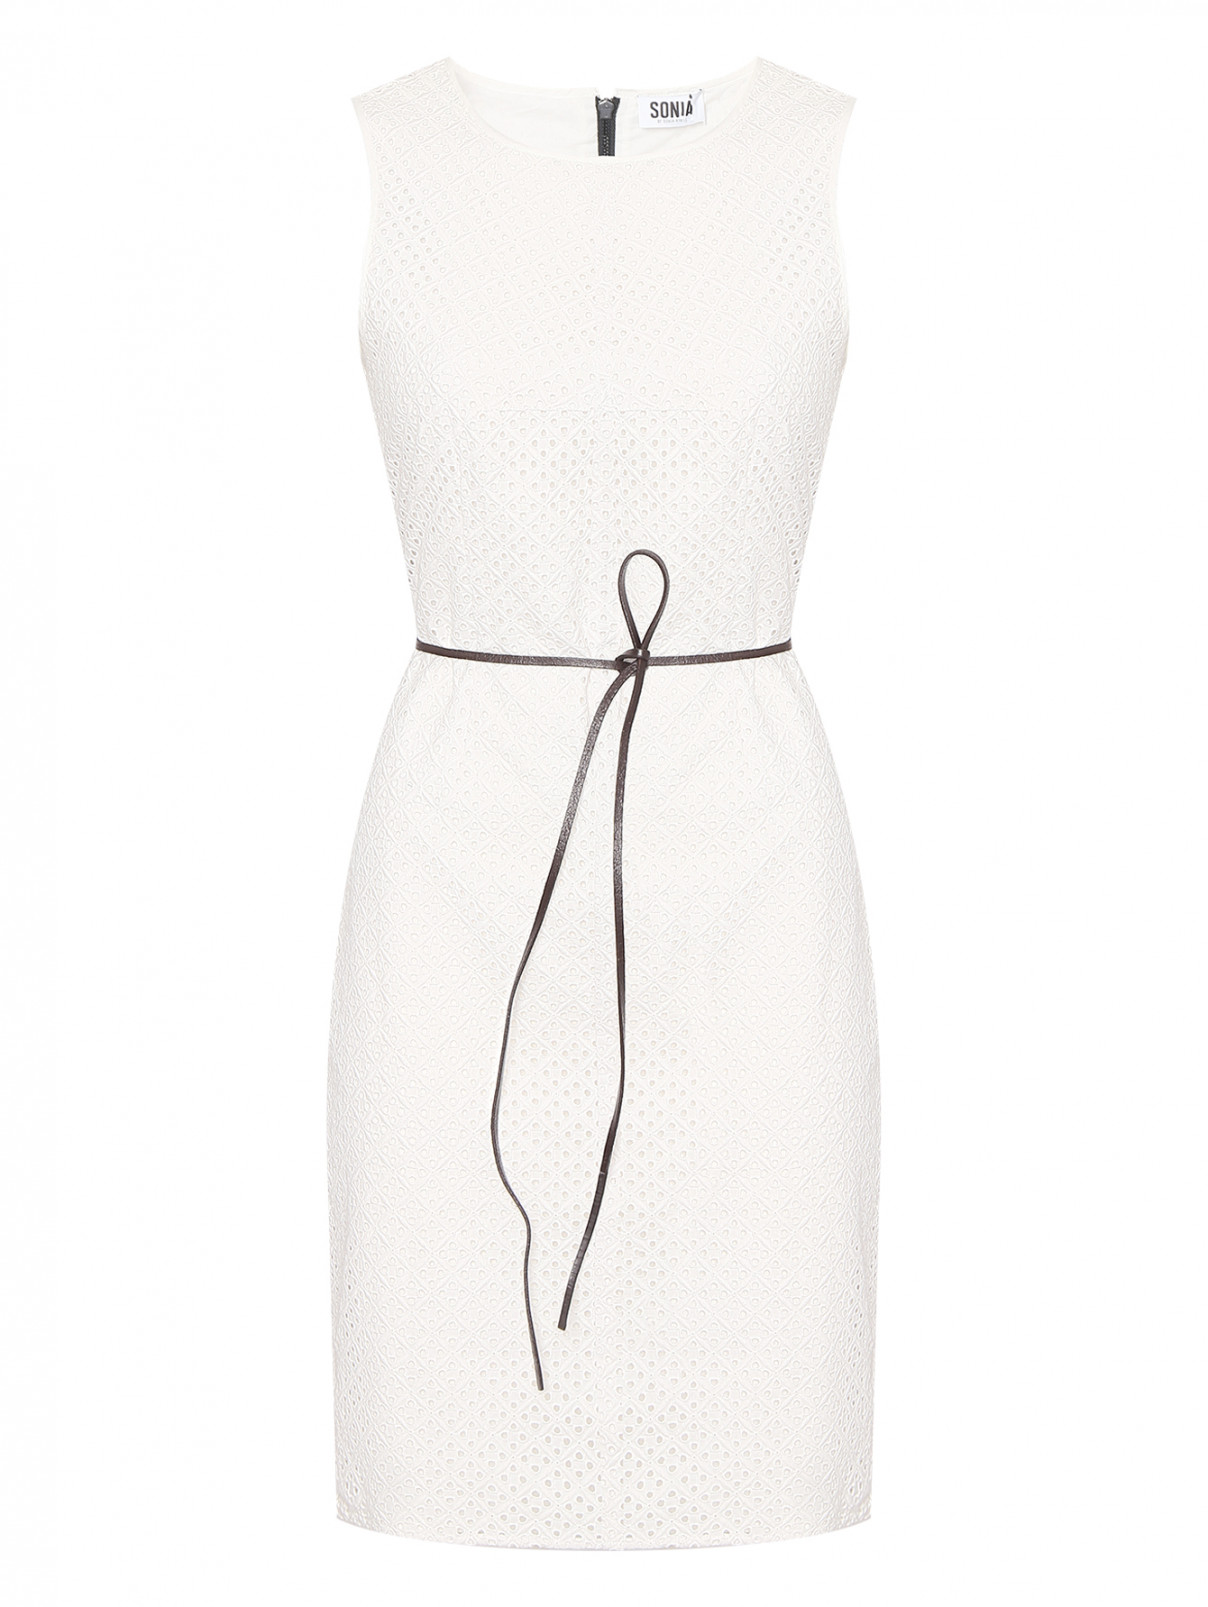 Платье-мини из хлопка с поясом Sonia Rykiel  –  Общий вид  – Цвет:  Белый